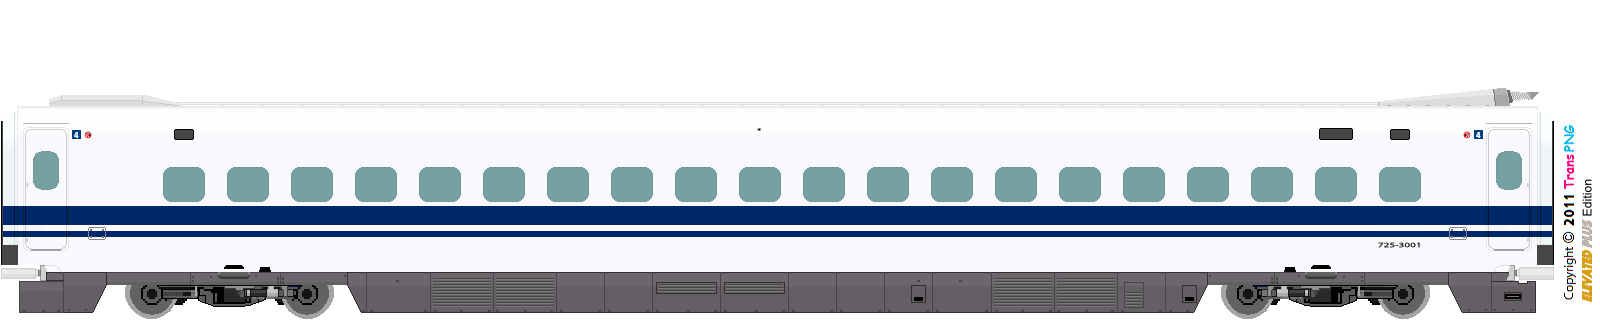 9012 - [9012] West Japan Railway 52287585753_fc48e4316a_o